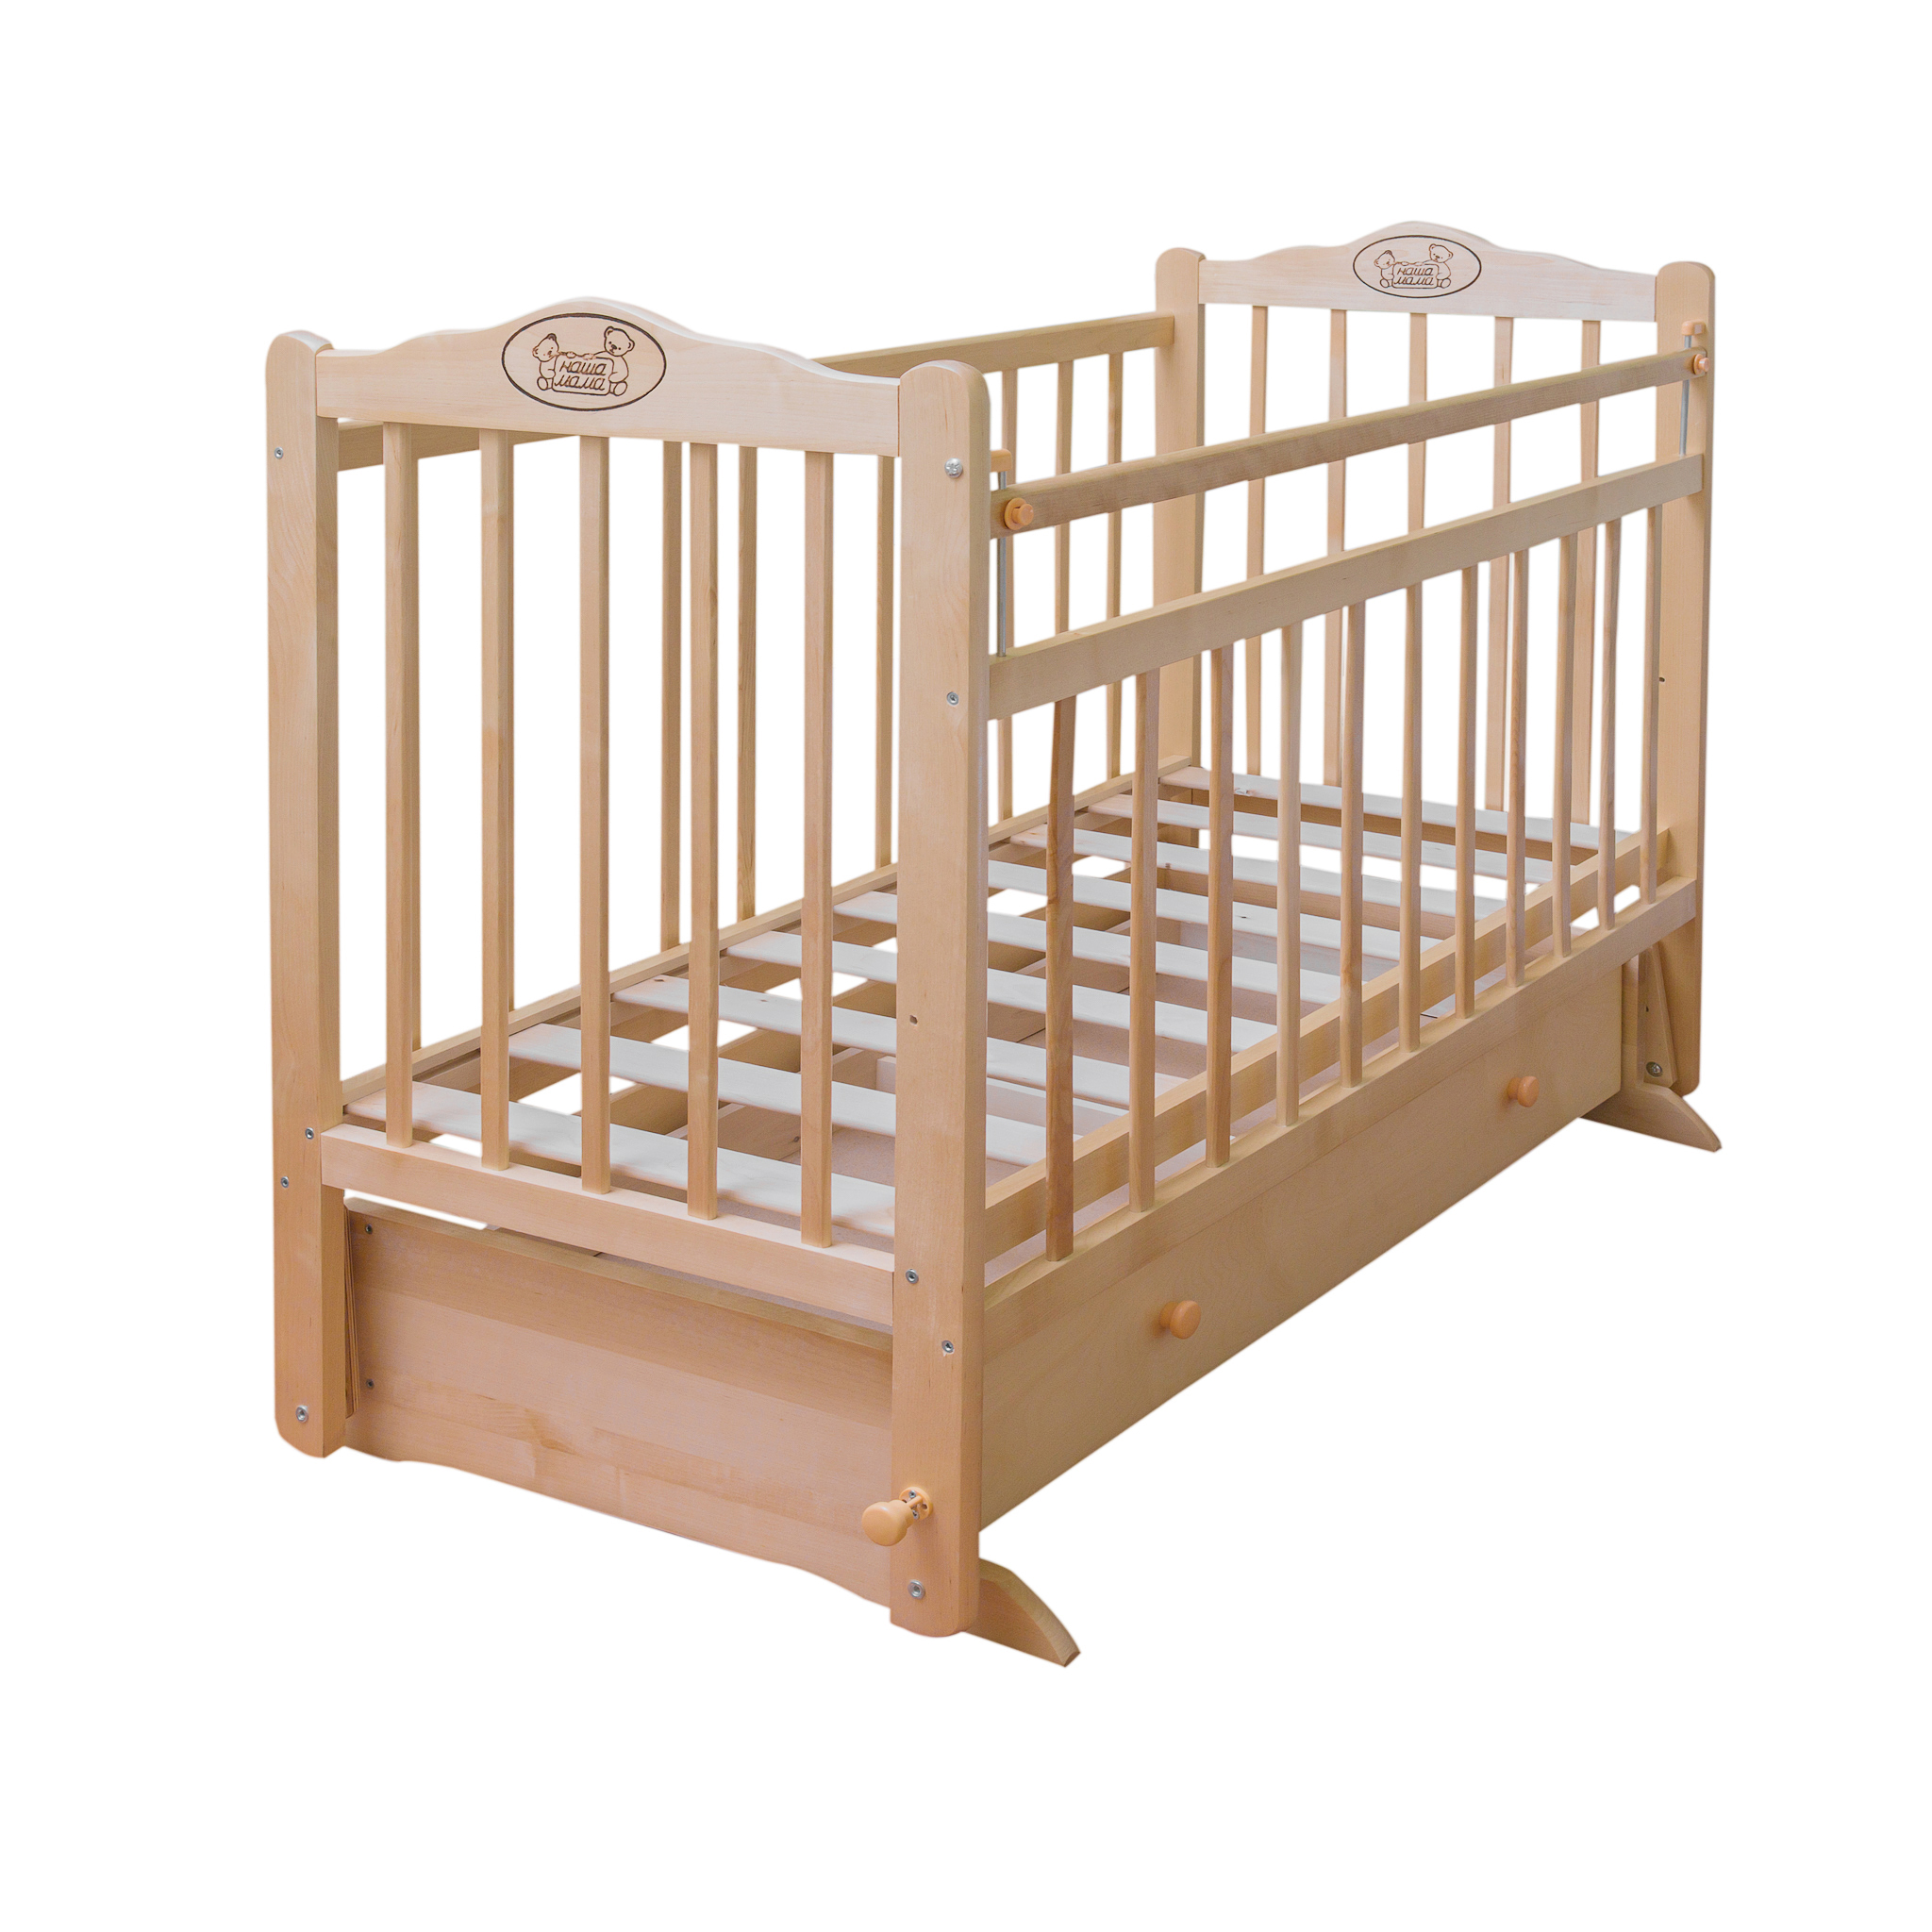 Детские кроватки Наша мама Тая - рейтинг 2 по отзывам экспертов ☑Экспертиза состава и производителя